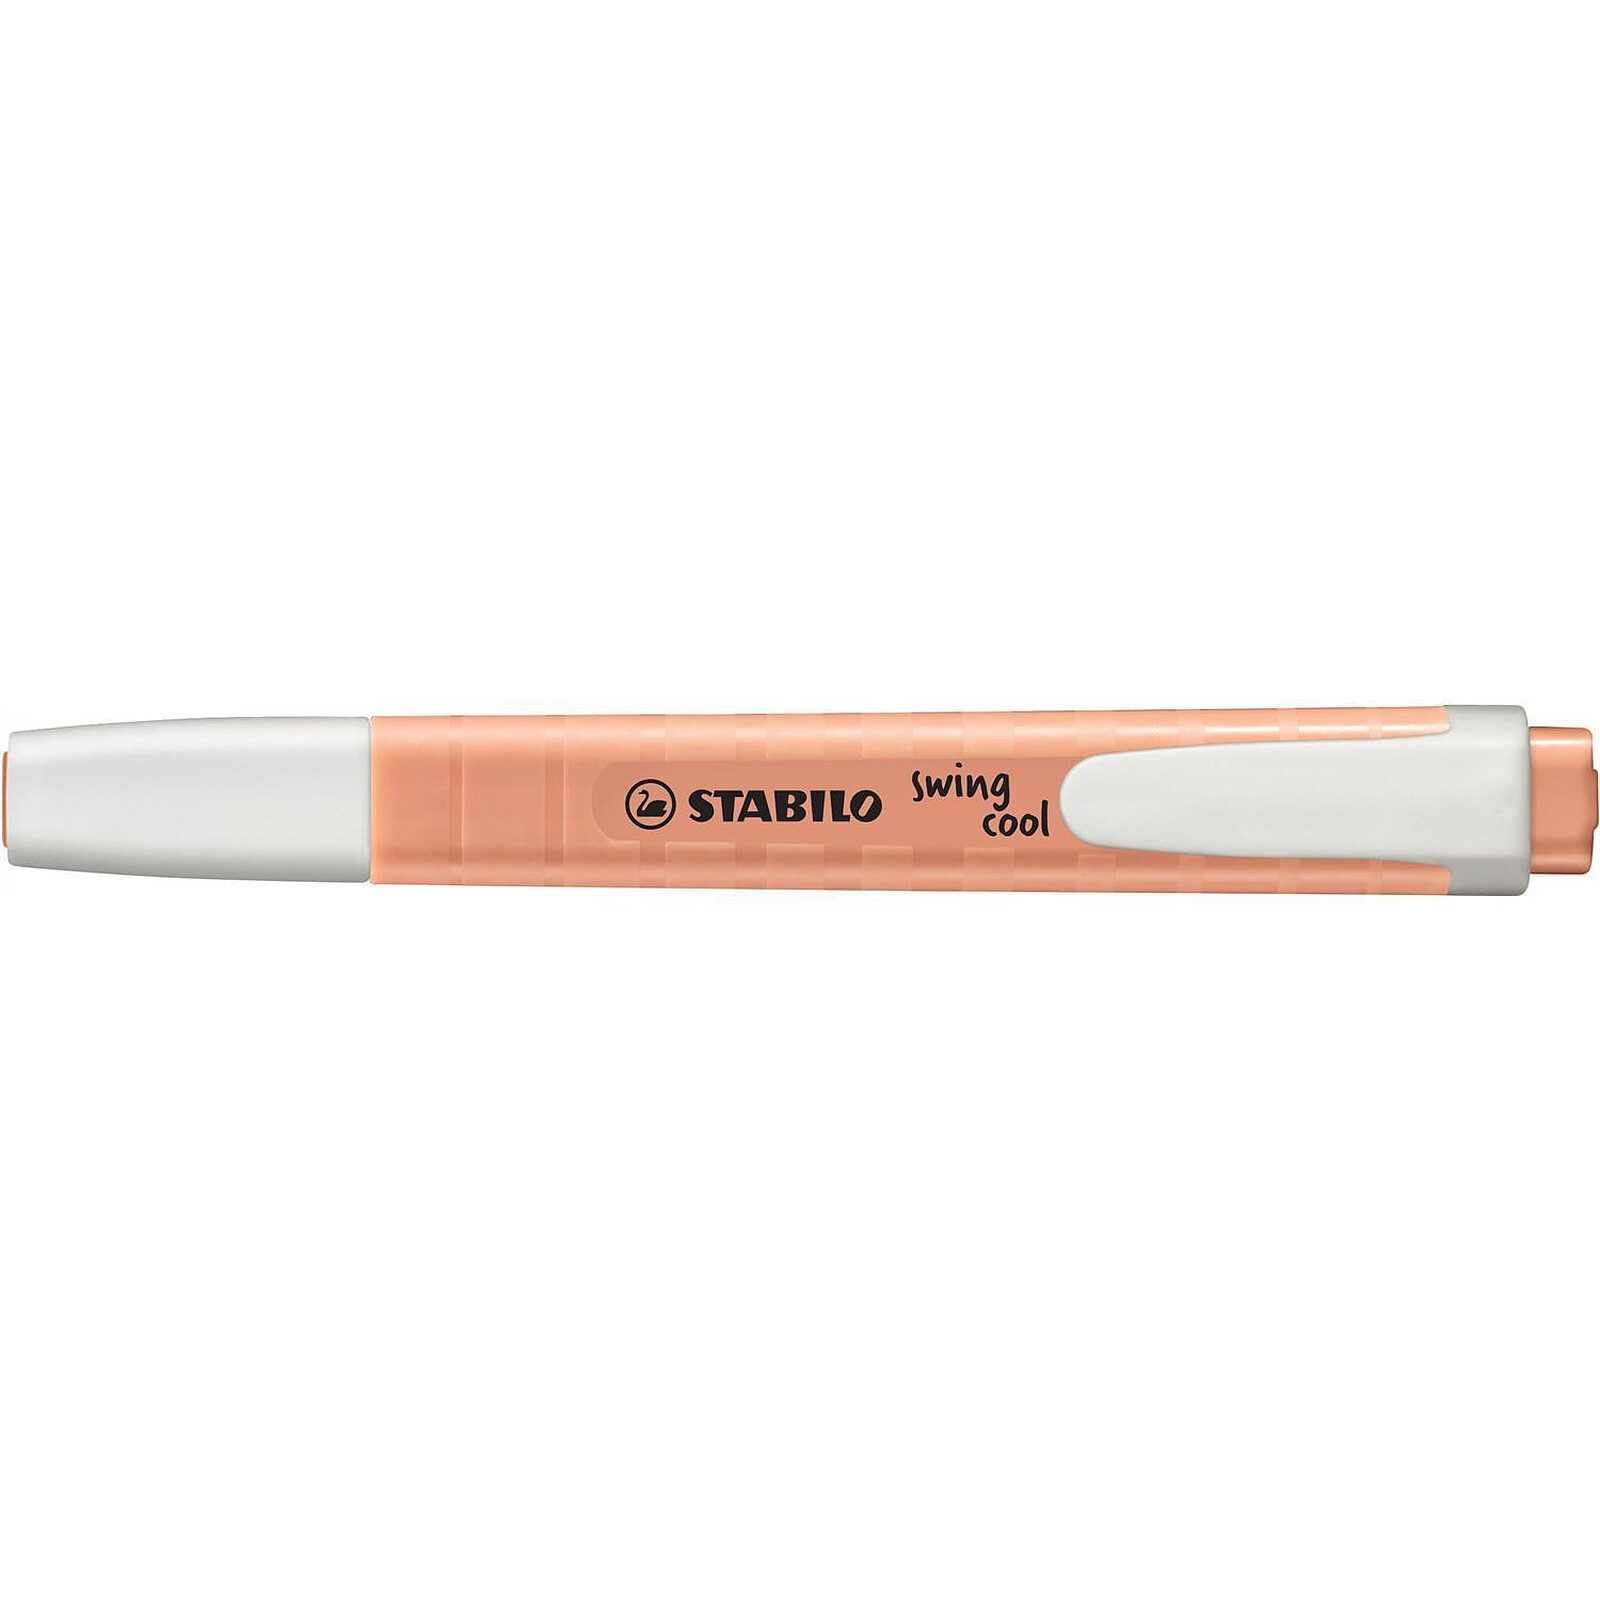 STABILO Surligneur - swing cool Pastel Edition - Teint de Pêche x 10 -  Surligneur - LDLC